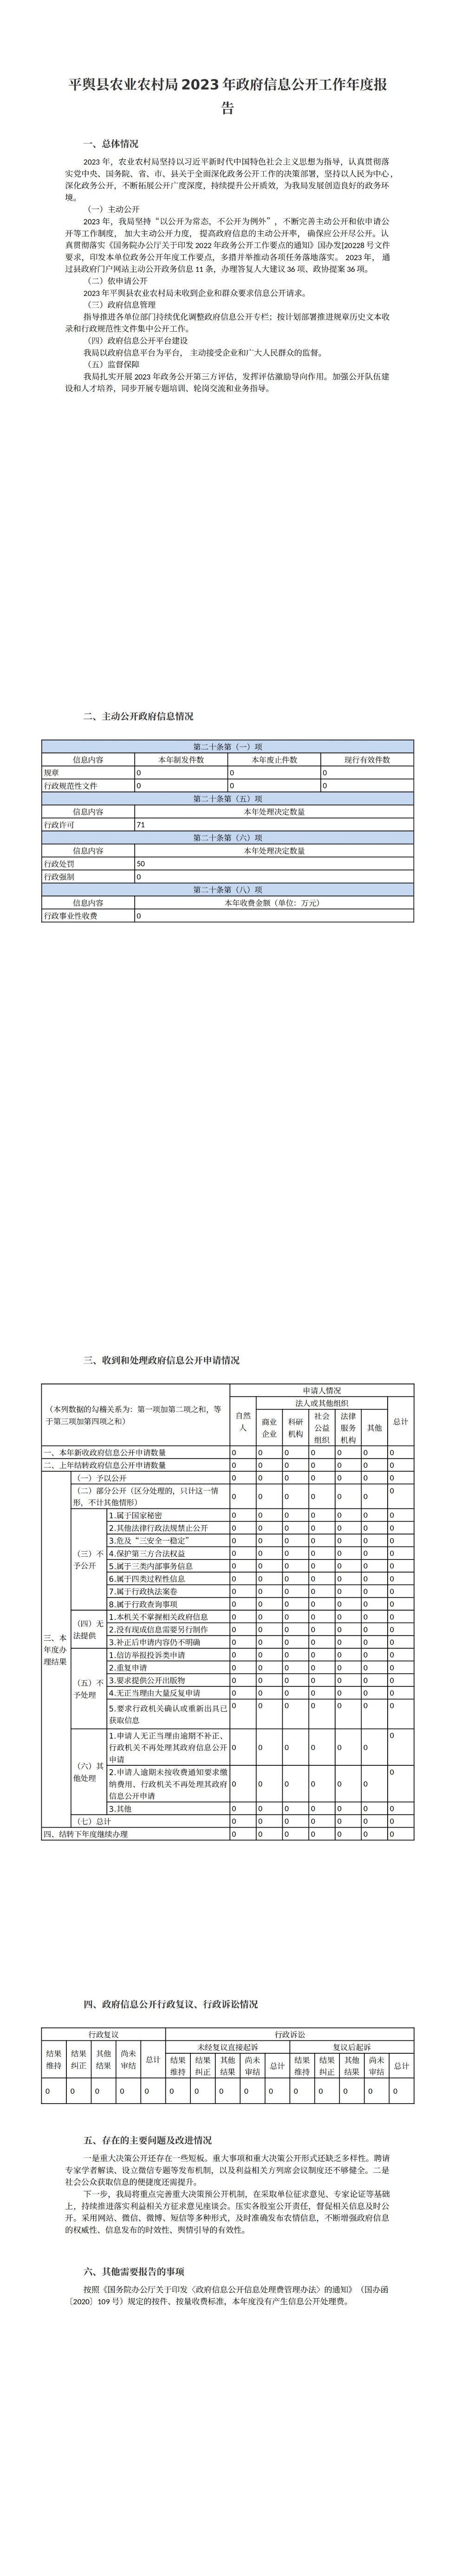 平舆县农业农村局2023年政府信息公开工作年度报告_00.jpg